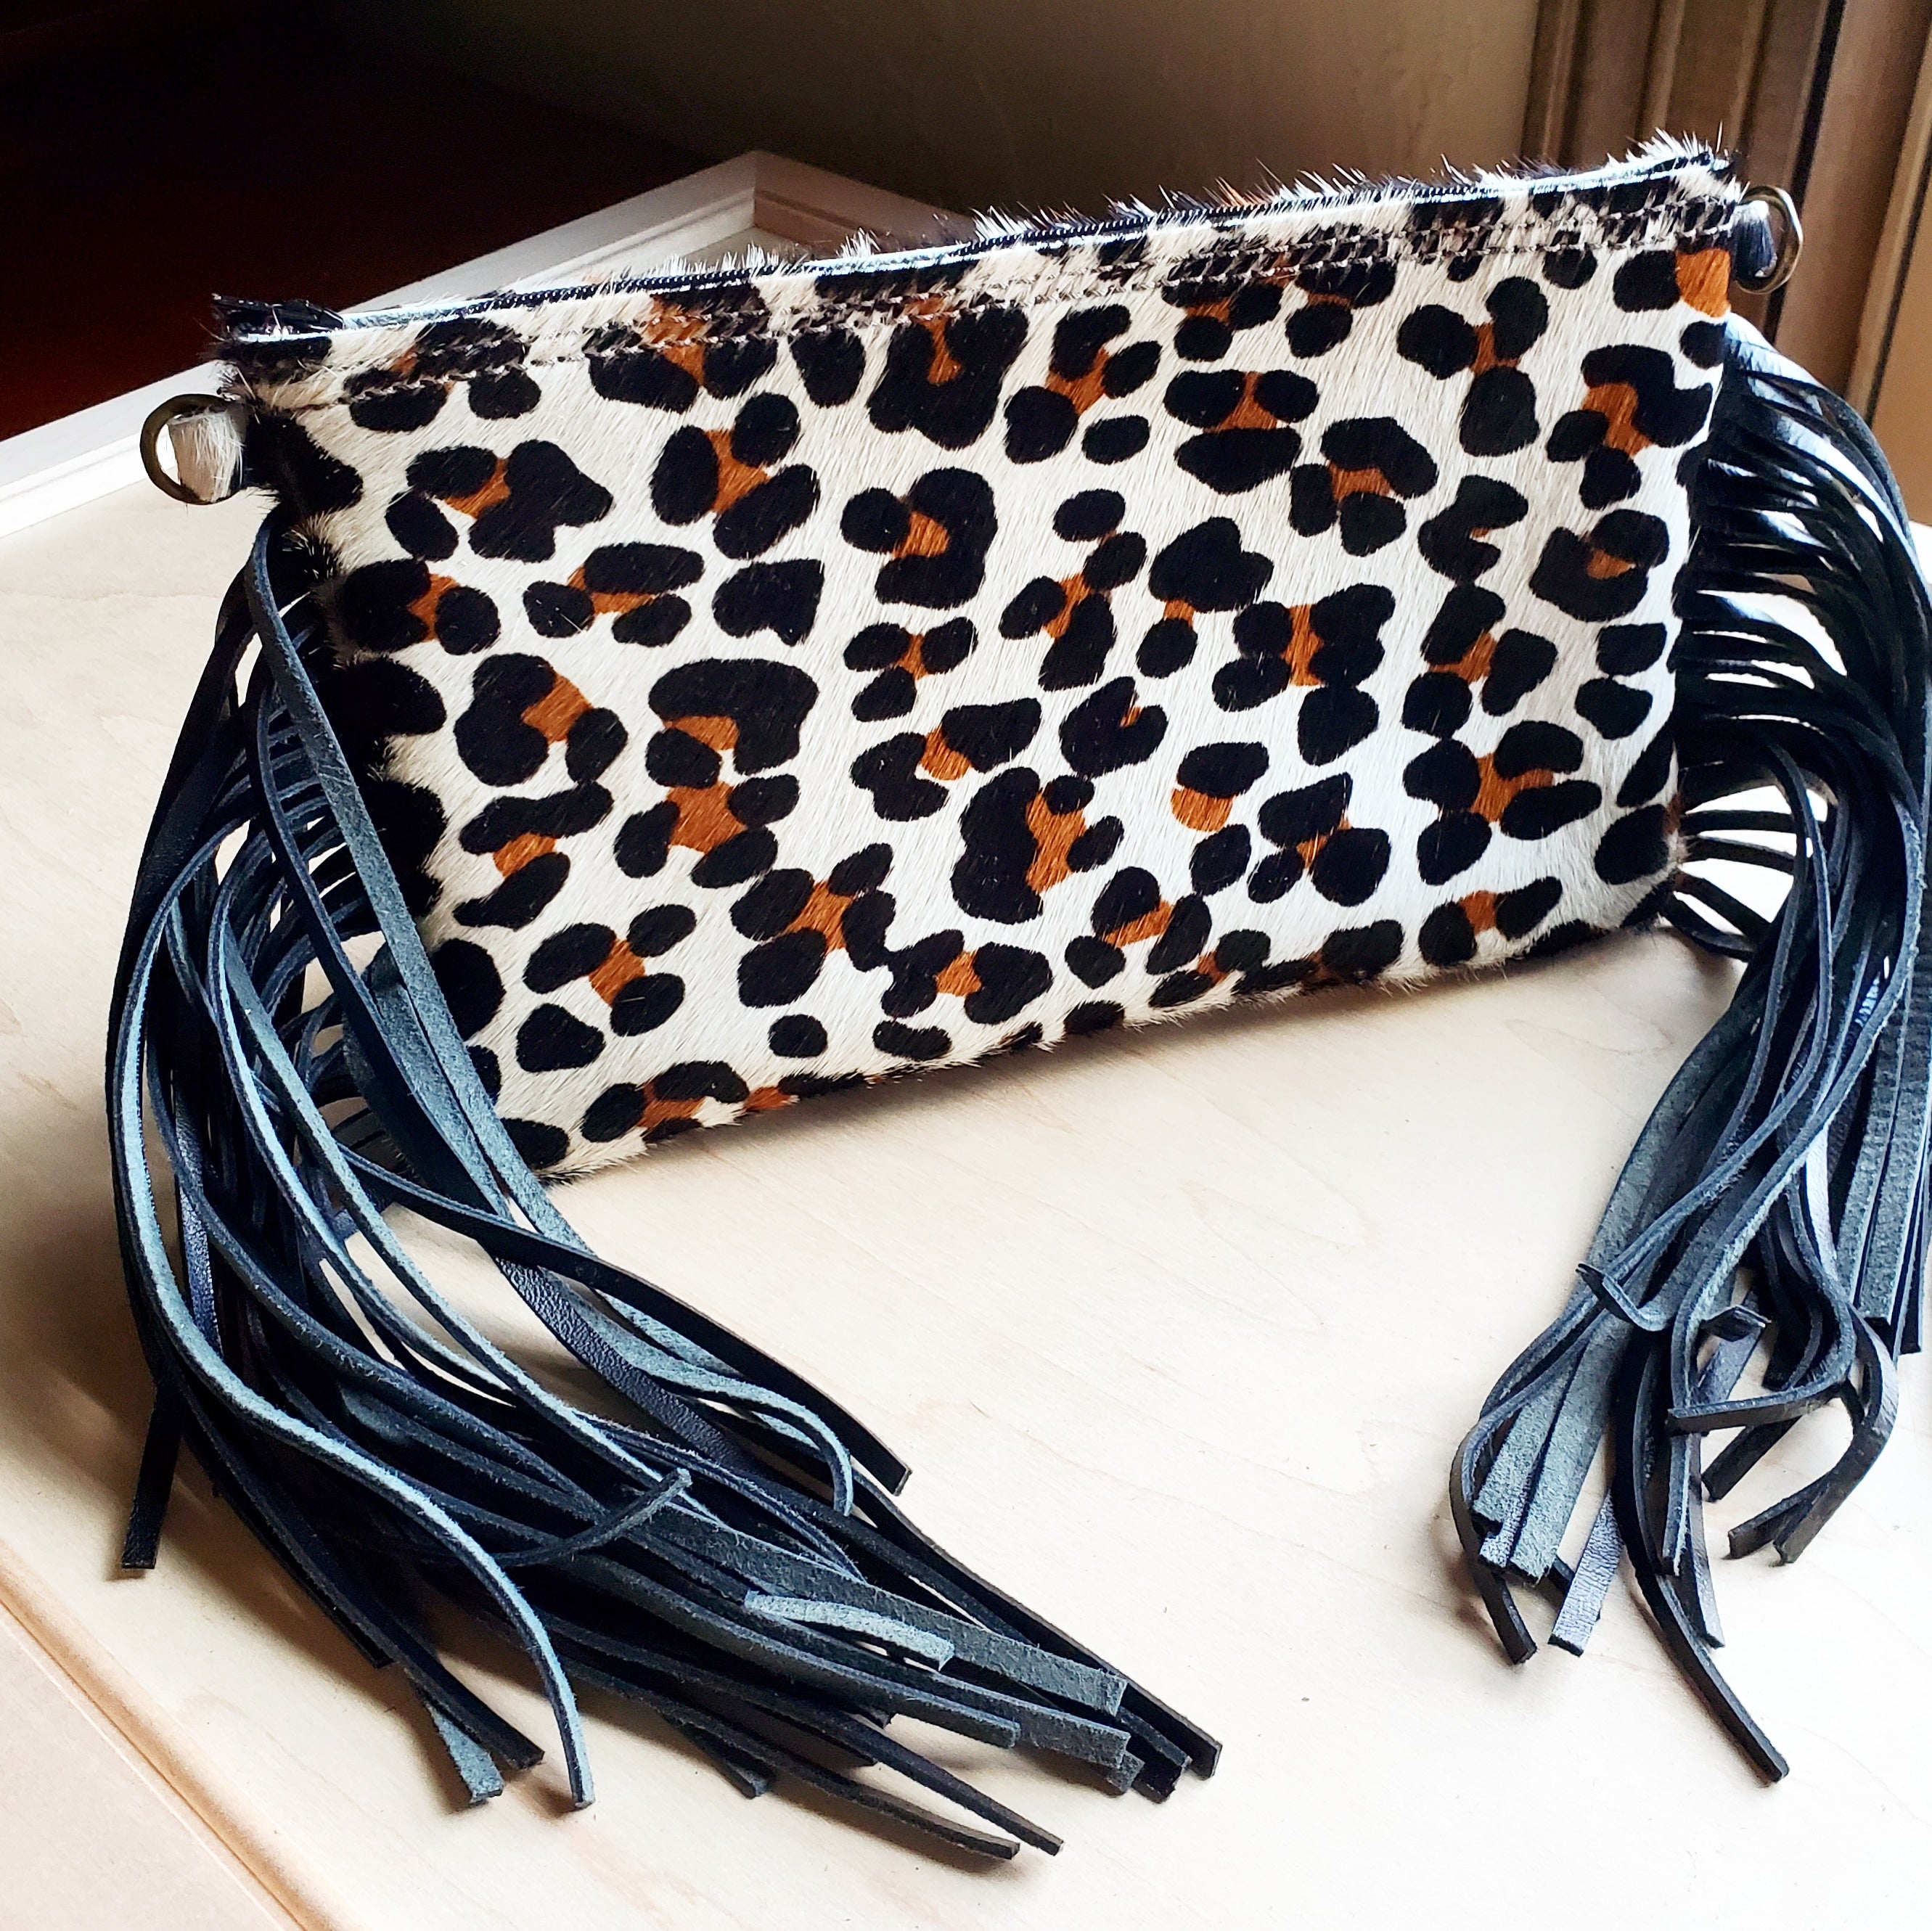 Leopard Hair-On-Hide Clutch Handbag 501B - The Jewelry Junkie